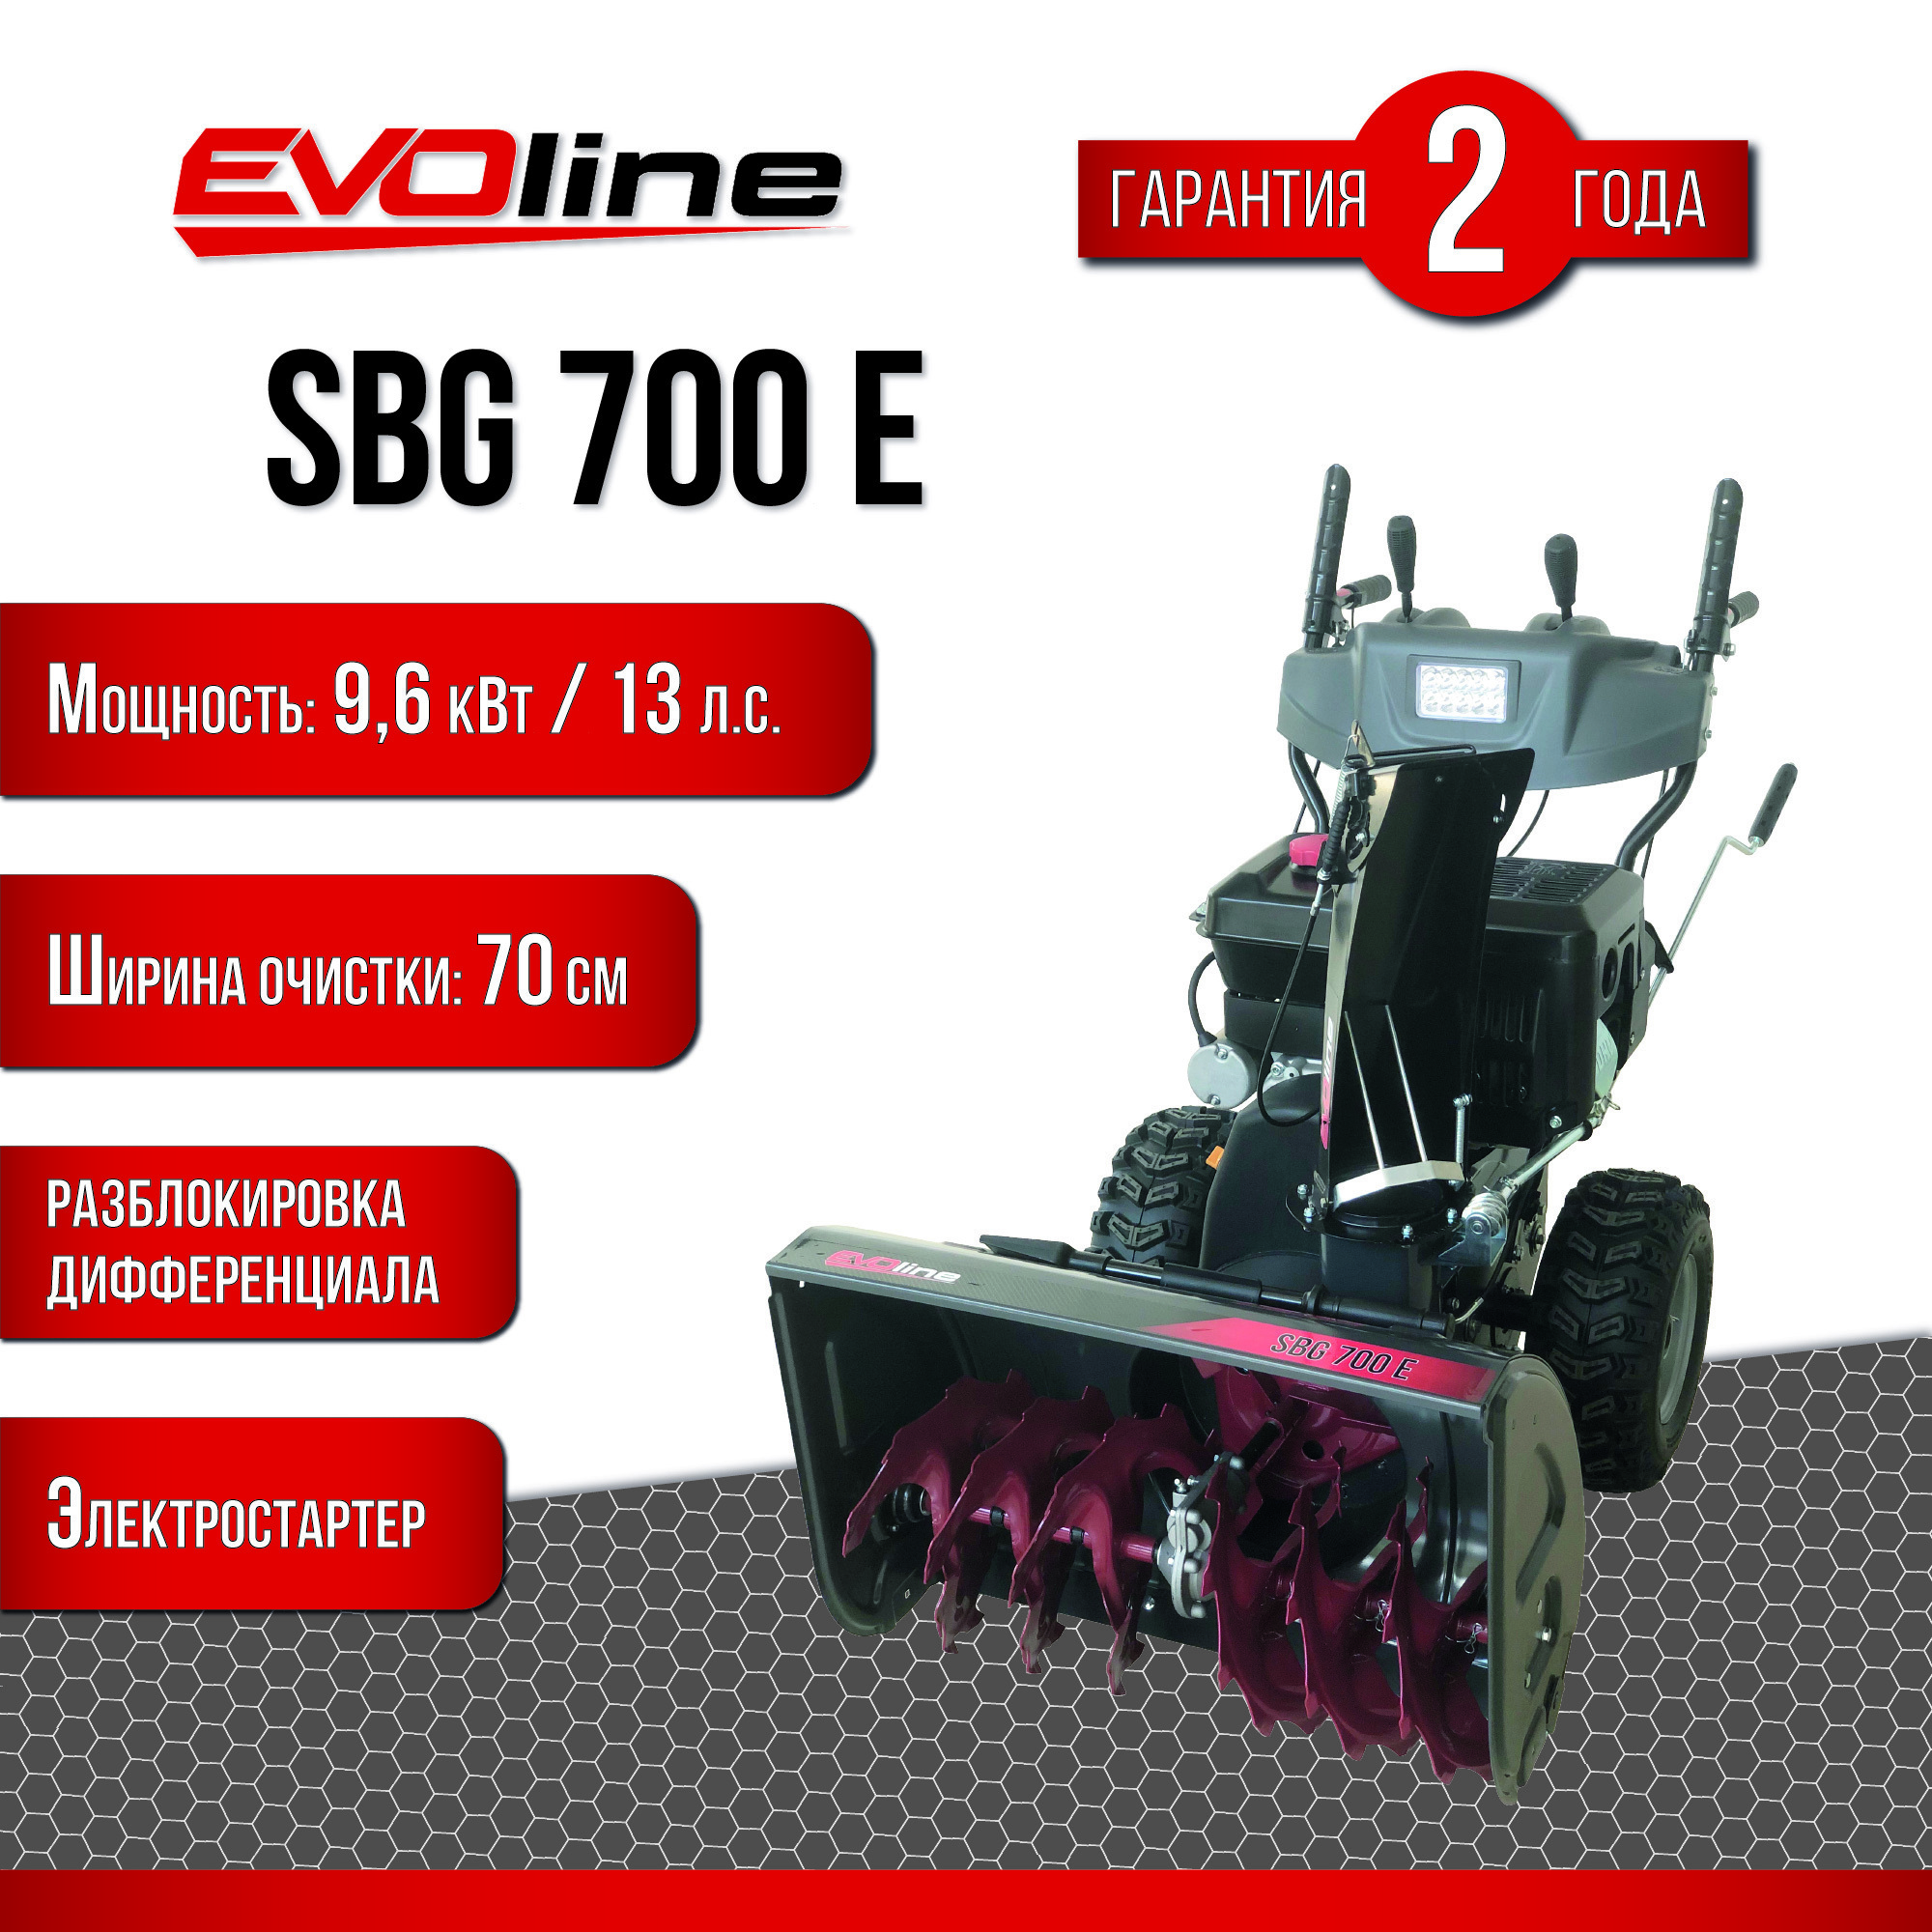  бензиновый EVOline SBG 700 E 70 см 13 л.с. по цене 159990 .